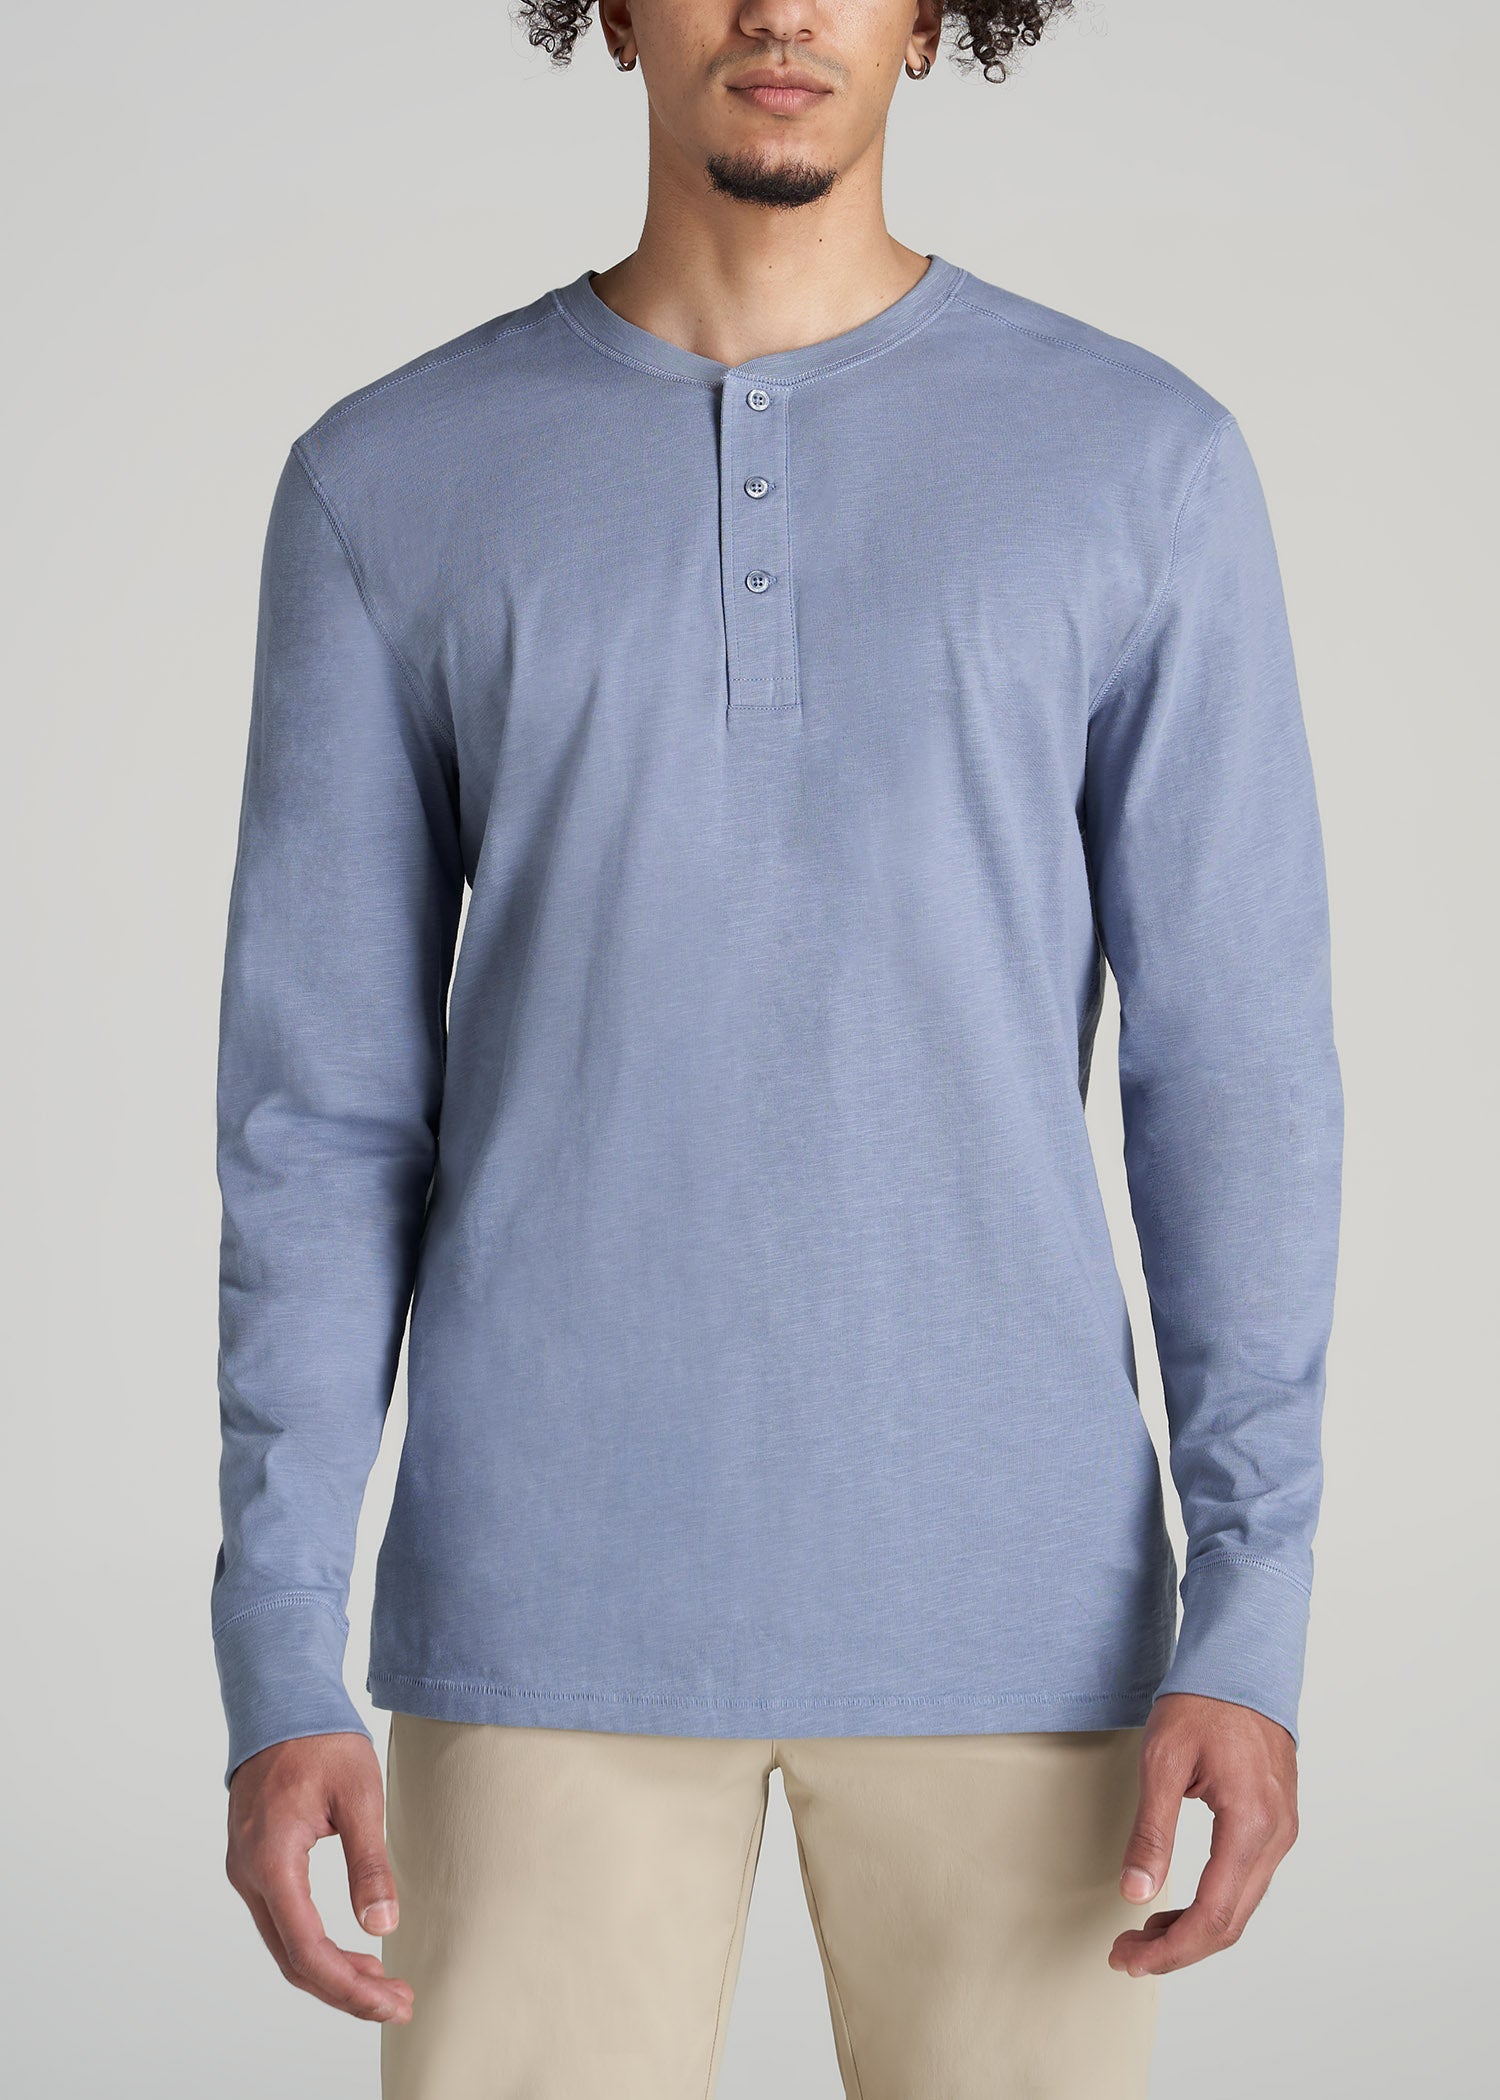 Men's Blue Henley Shirts